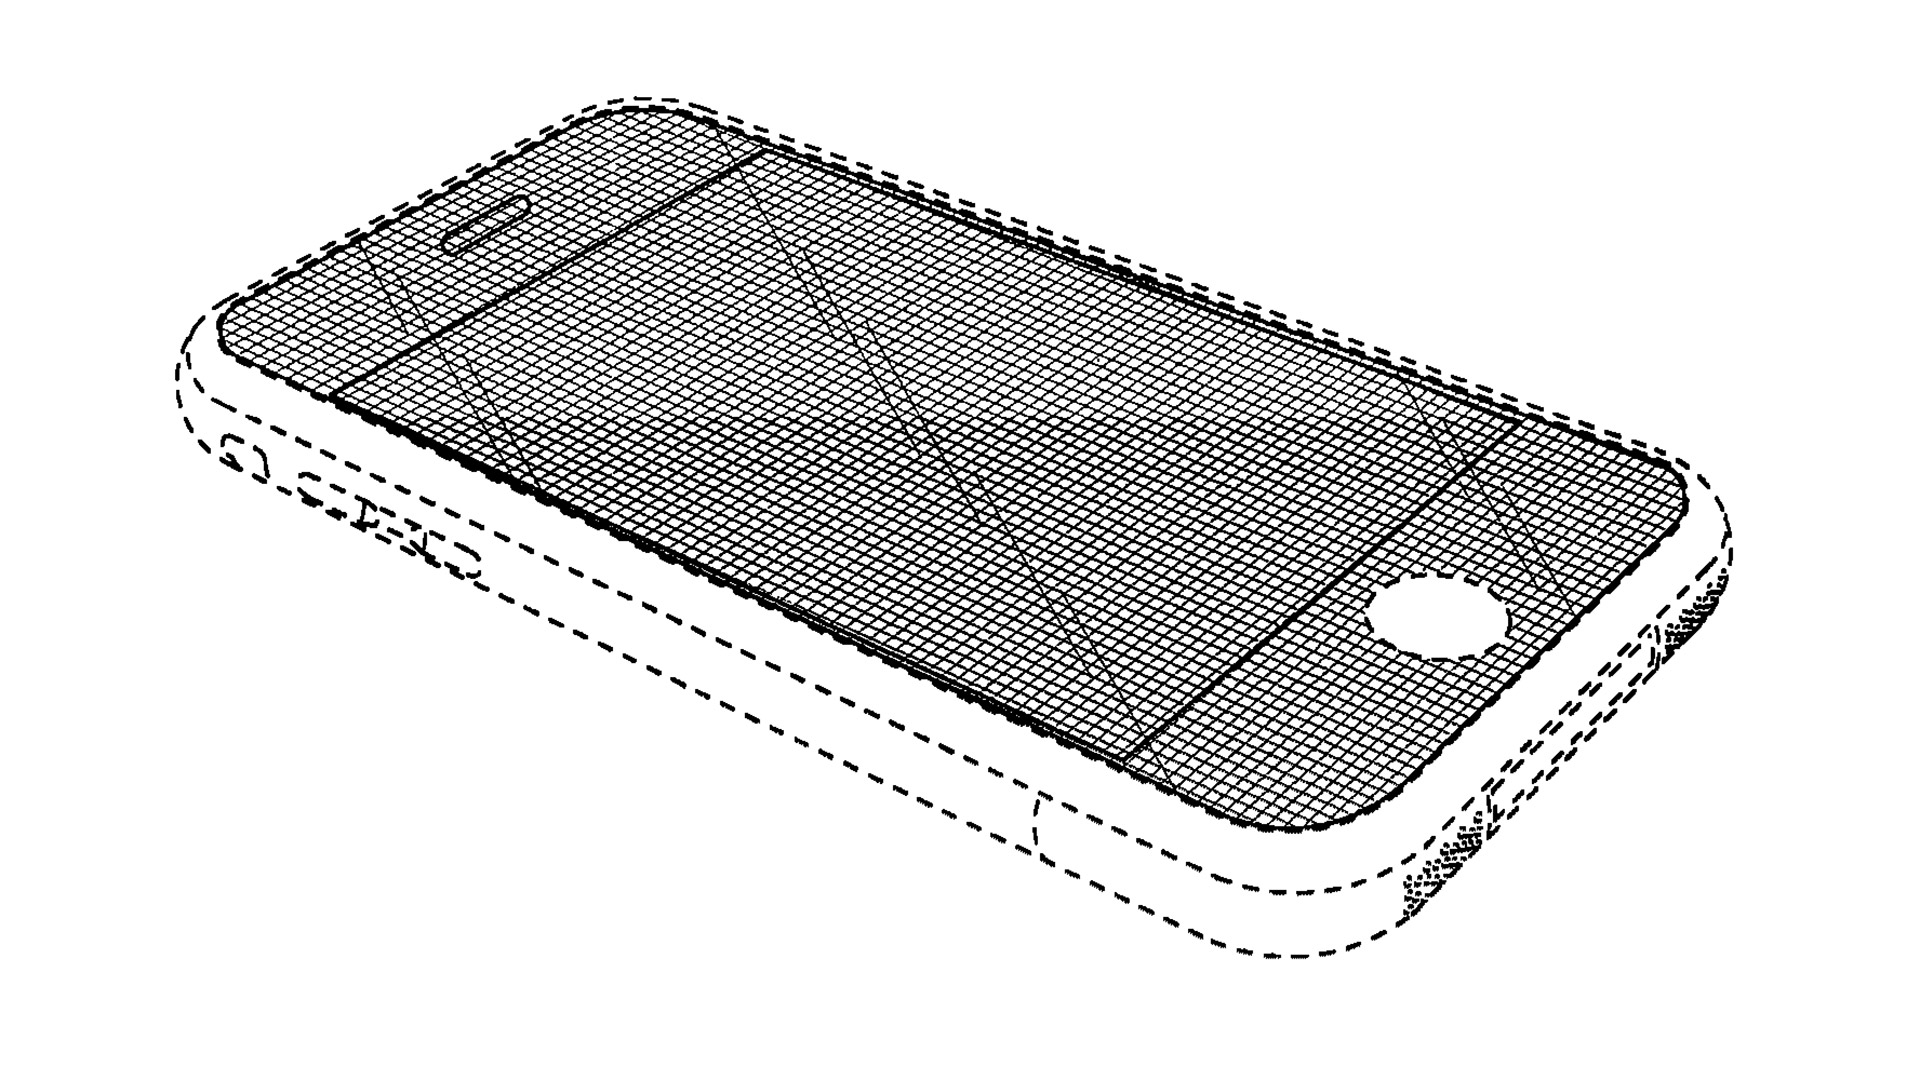 Apple iPhone z roku 2007 jako nákres na patentovém úřadě